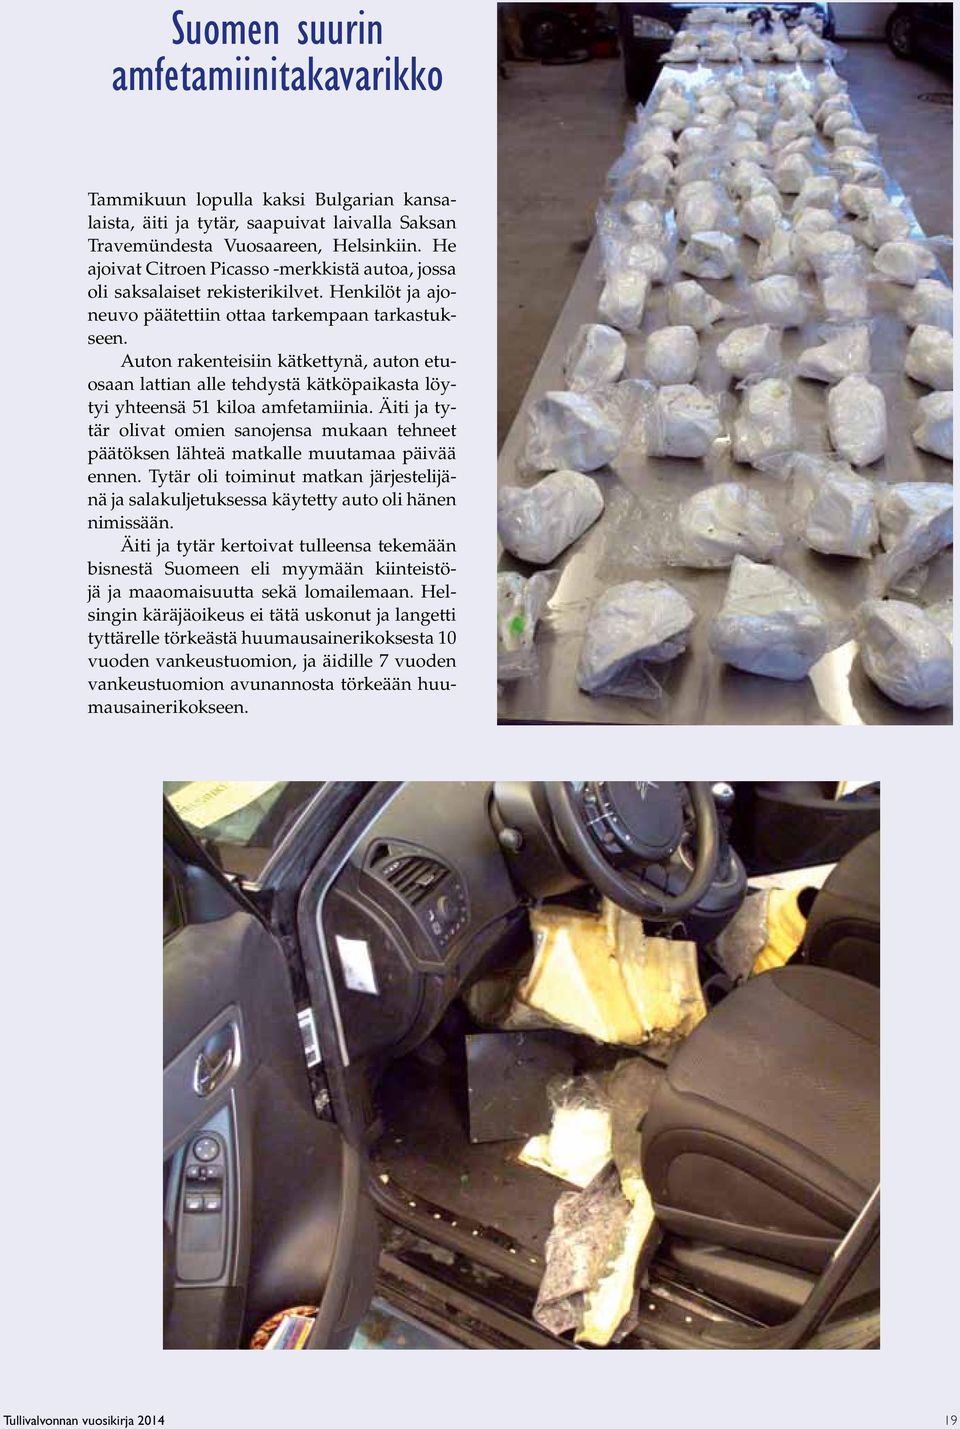 Auton rakenteisiin kätkettynä, auton etuosaan lattian alle tehdystä kätköpaikasta löytyi yhteensä 51 kiloa amfetamiinia.